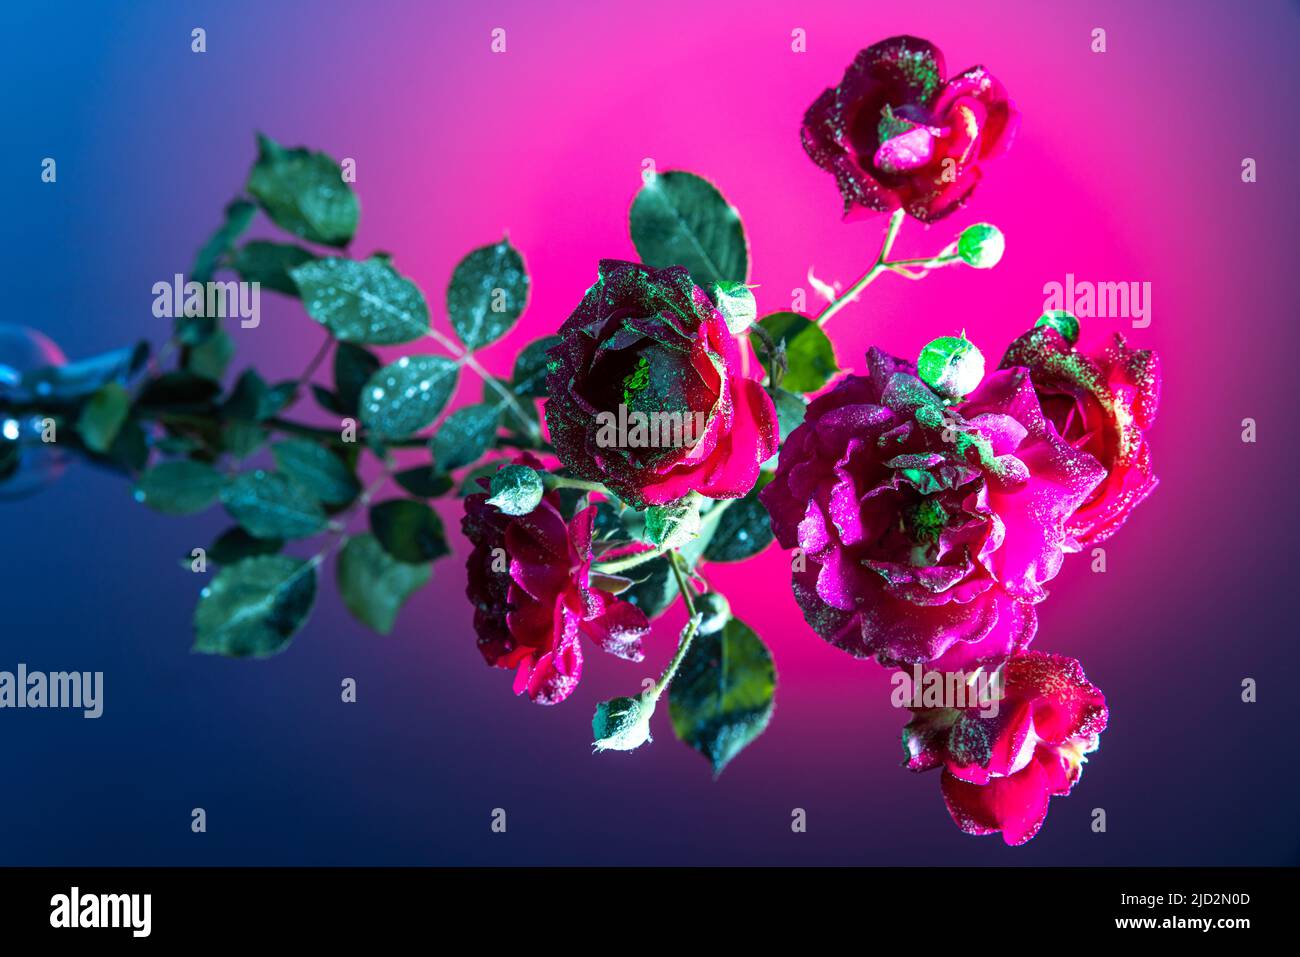 Différentes fleurs, adorable composition florale isolée sur fond bleu dans une lumière rose fluo. Concept de fleuriste, décorations, créativité, décor Banque D'Images